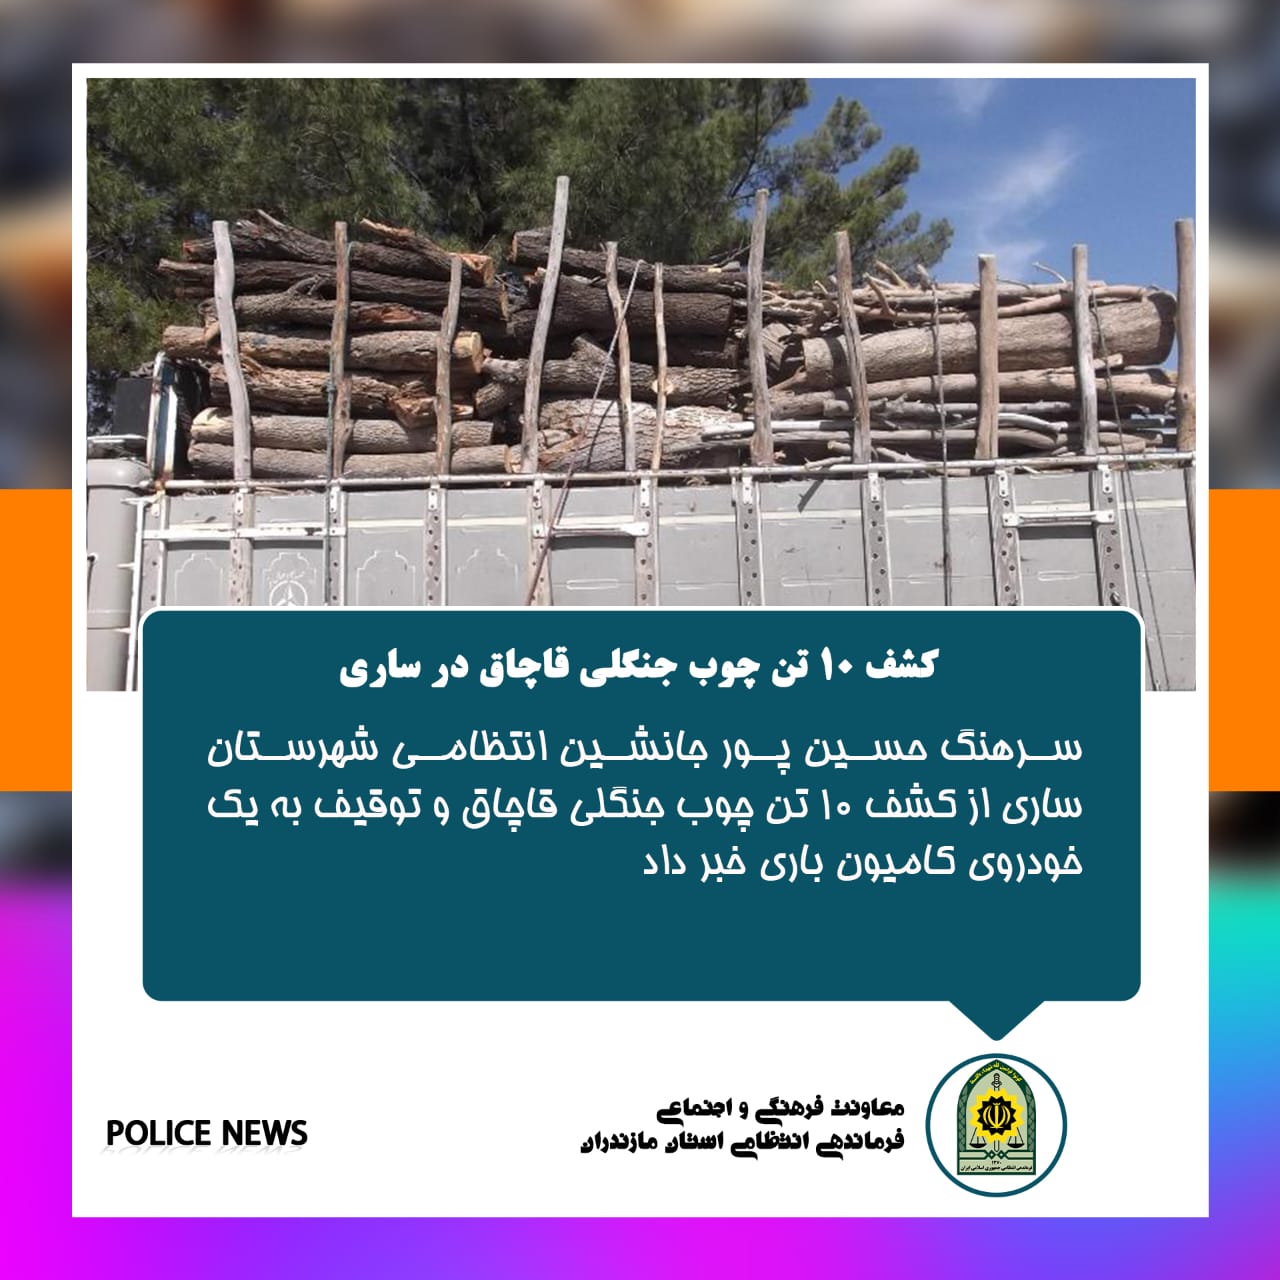  اخبار انتظامی استان مازندران در مورخه 02/05/1401